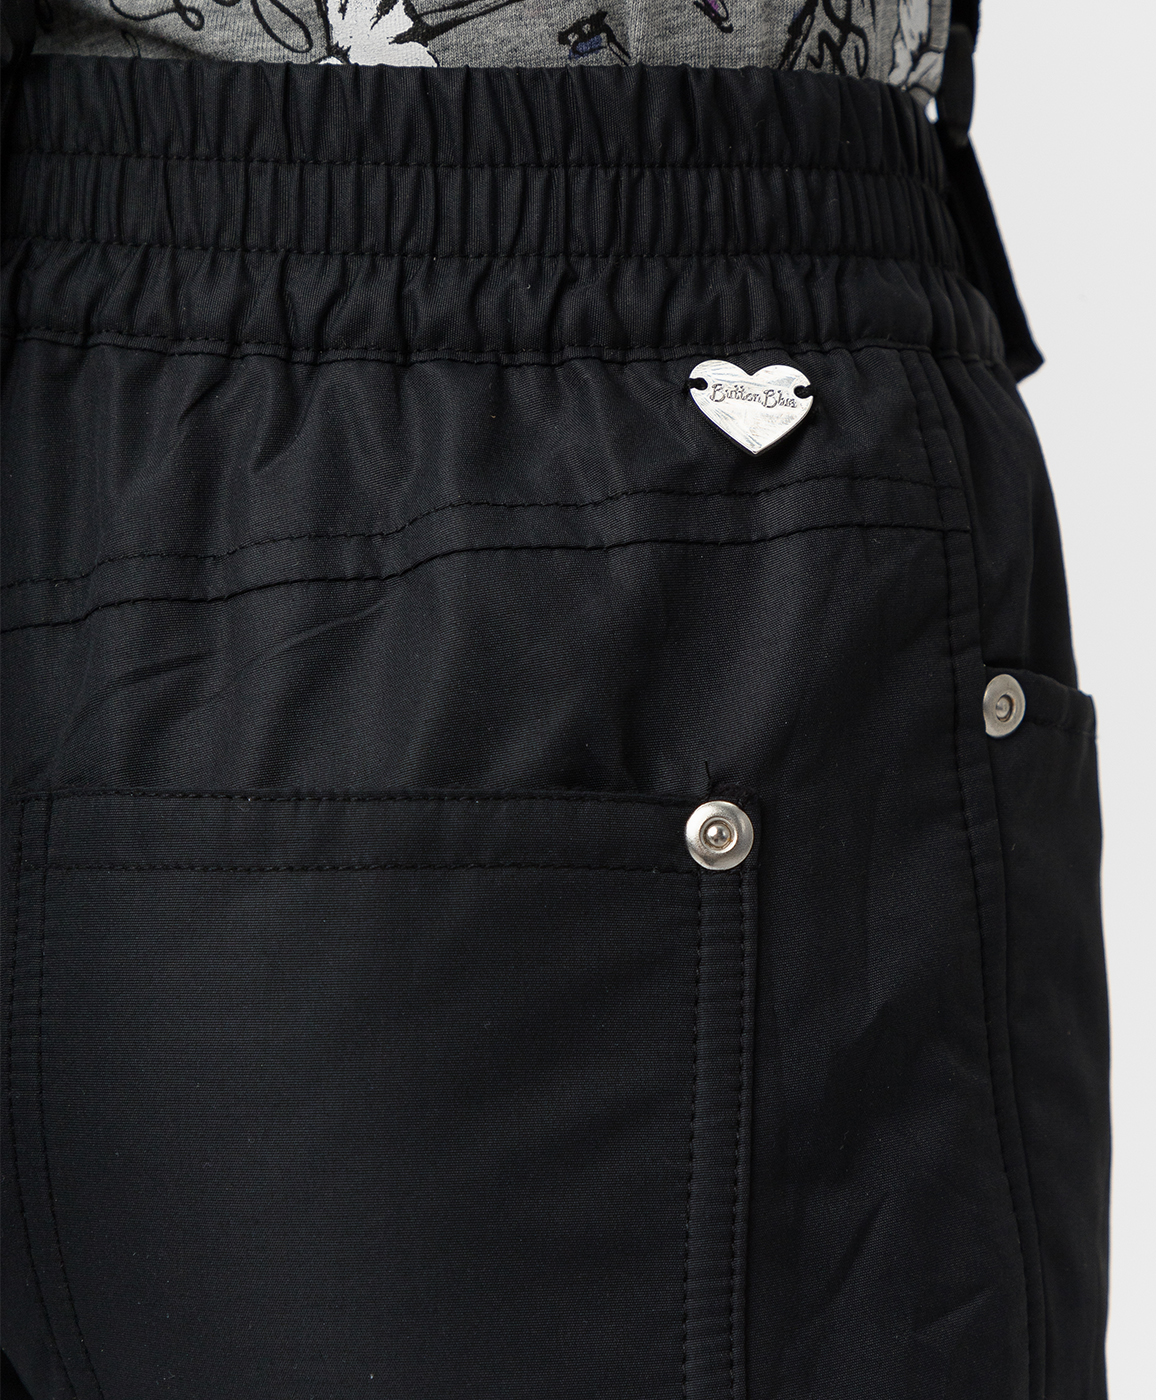 Утепленные черные брюки Button Blue 220BBGMC64020800, размер 98, цвет черный regular fit / прямые - фото 3